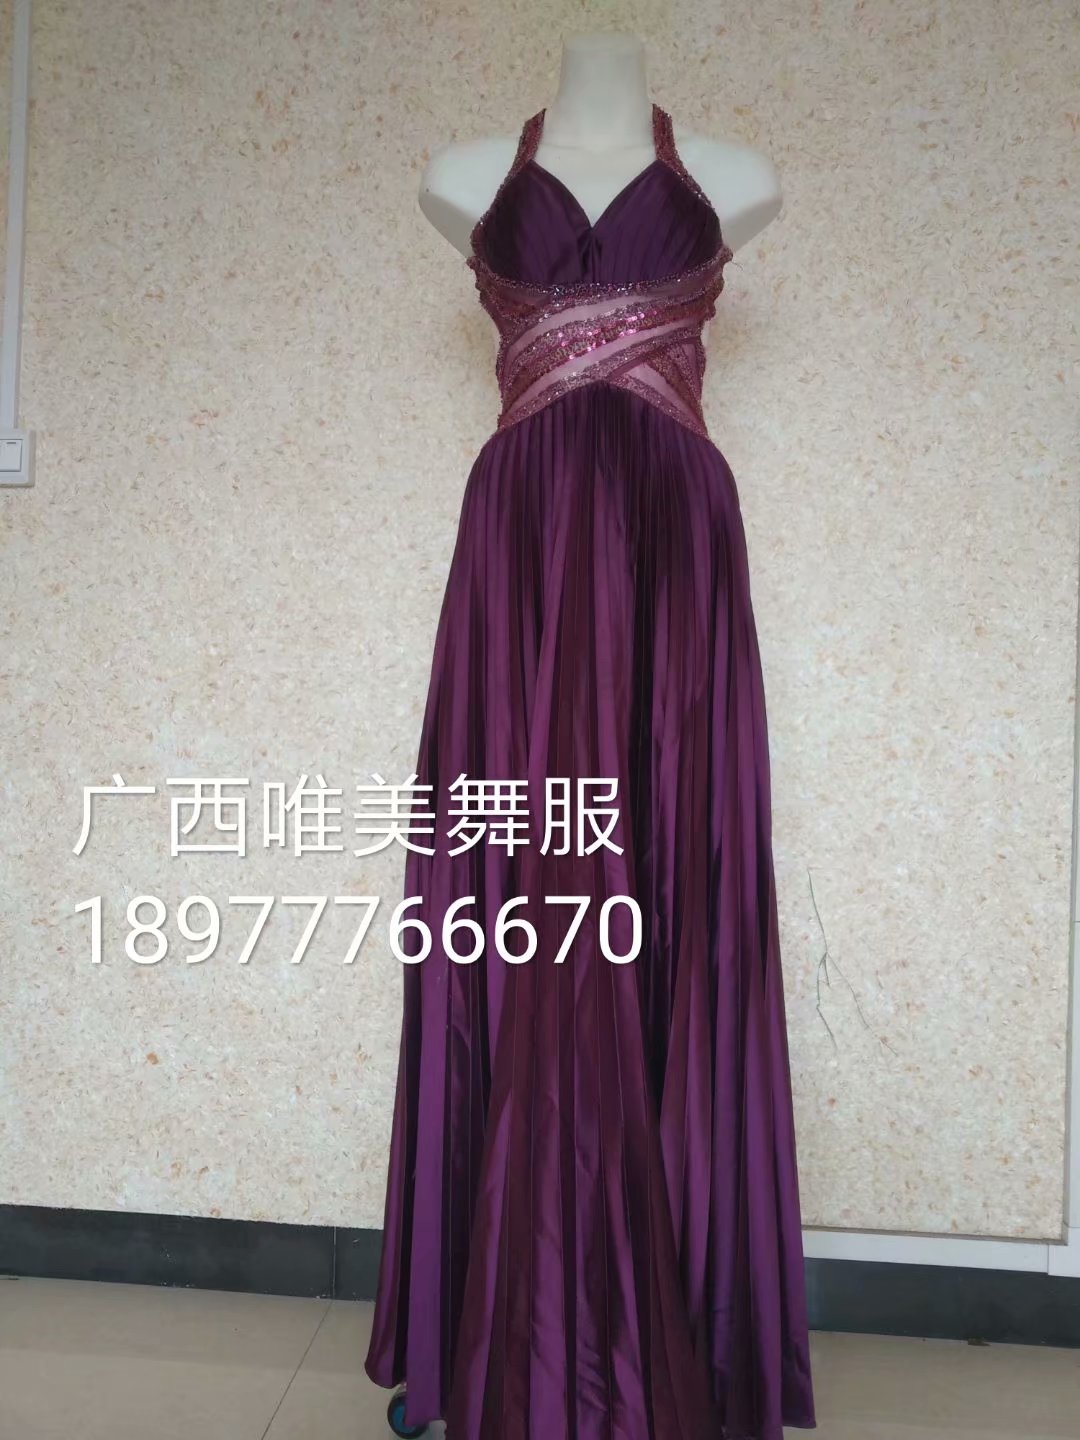 紫色大气礼服40元